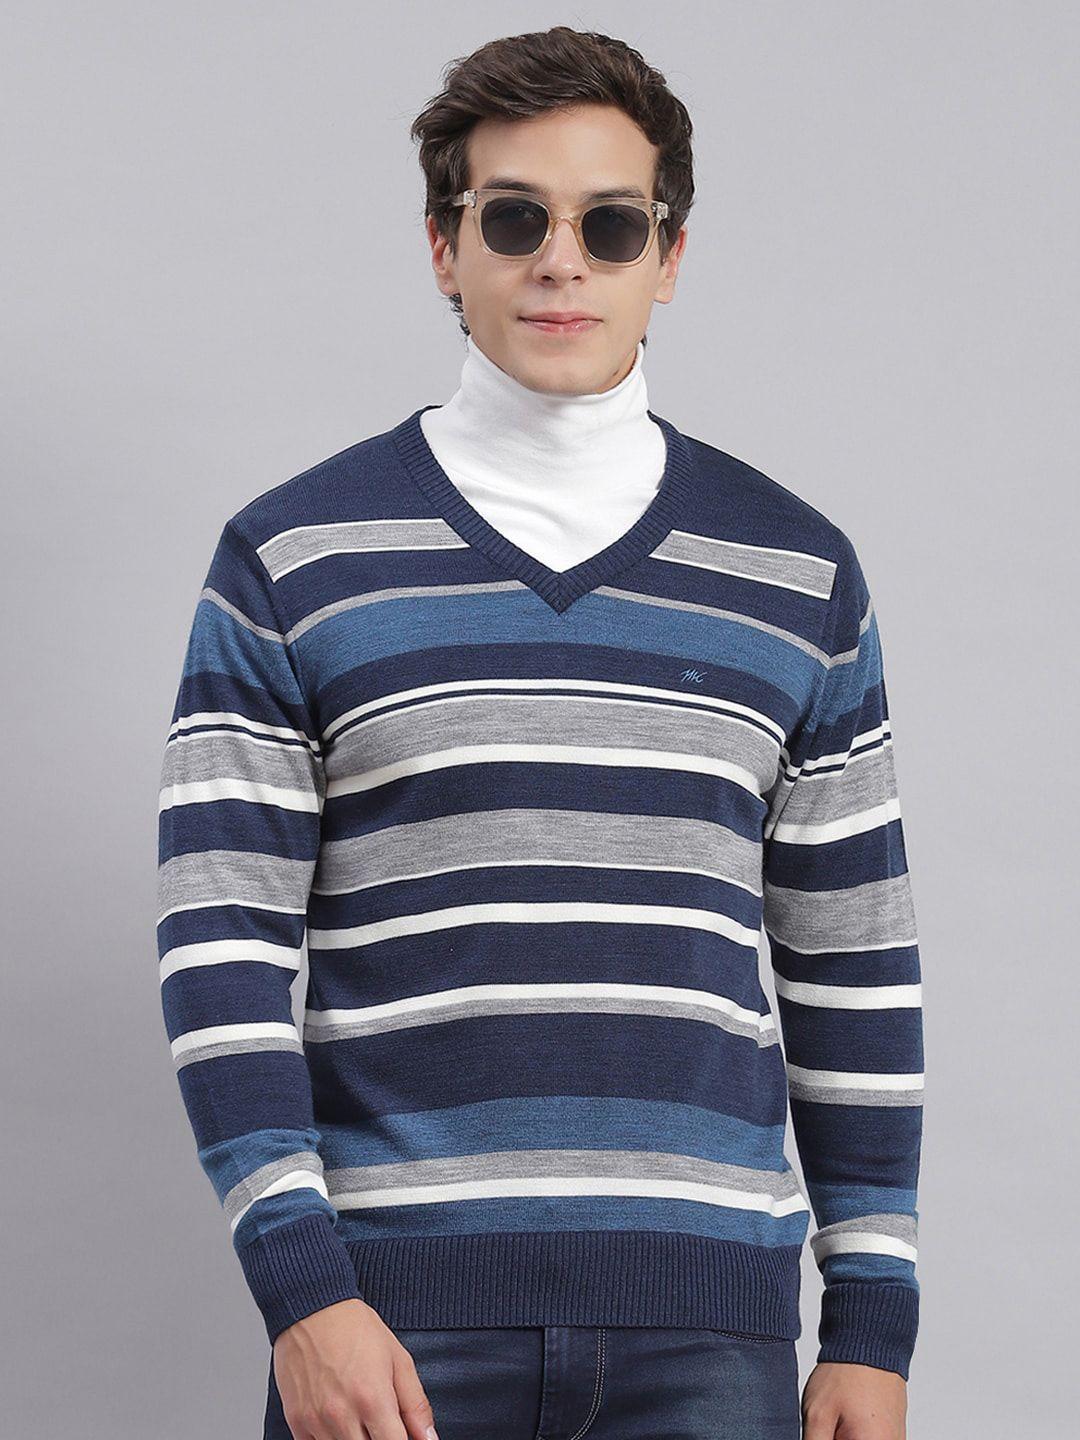 monte carlo striped v-neck pullover